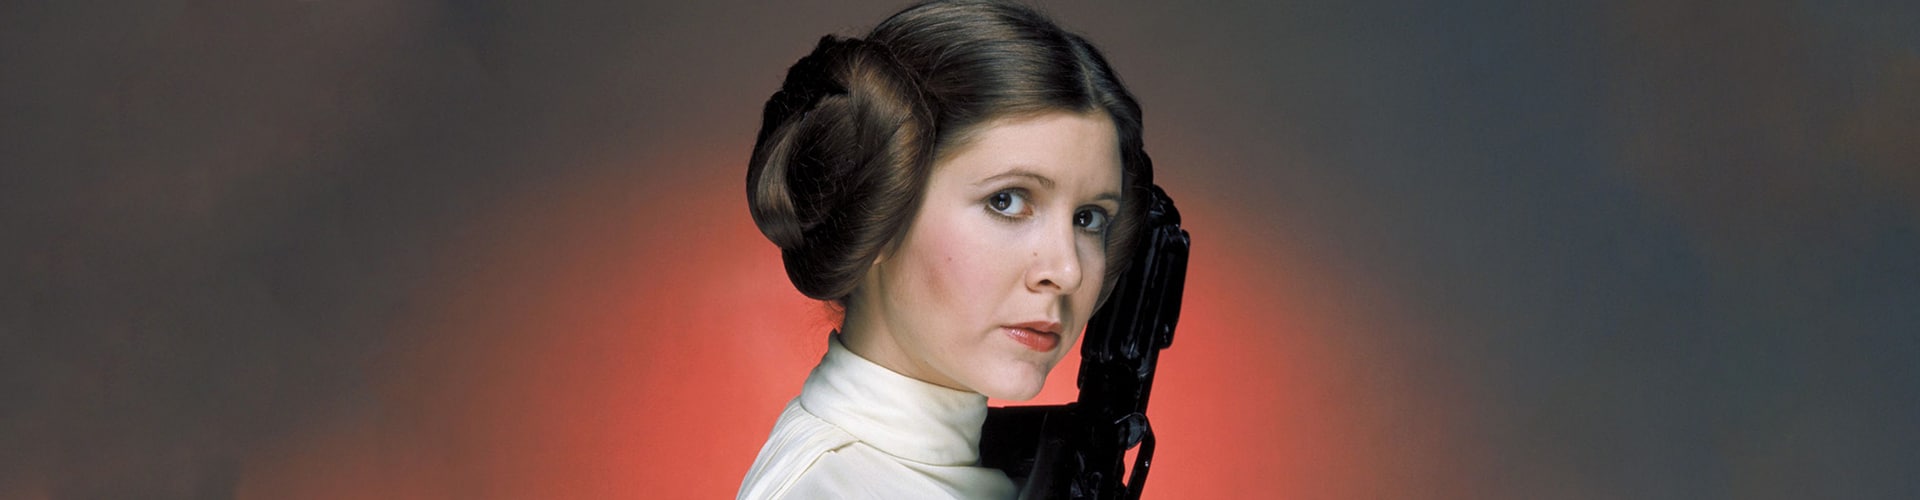 Princesse Leia, leader rebelle